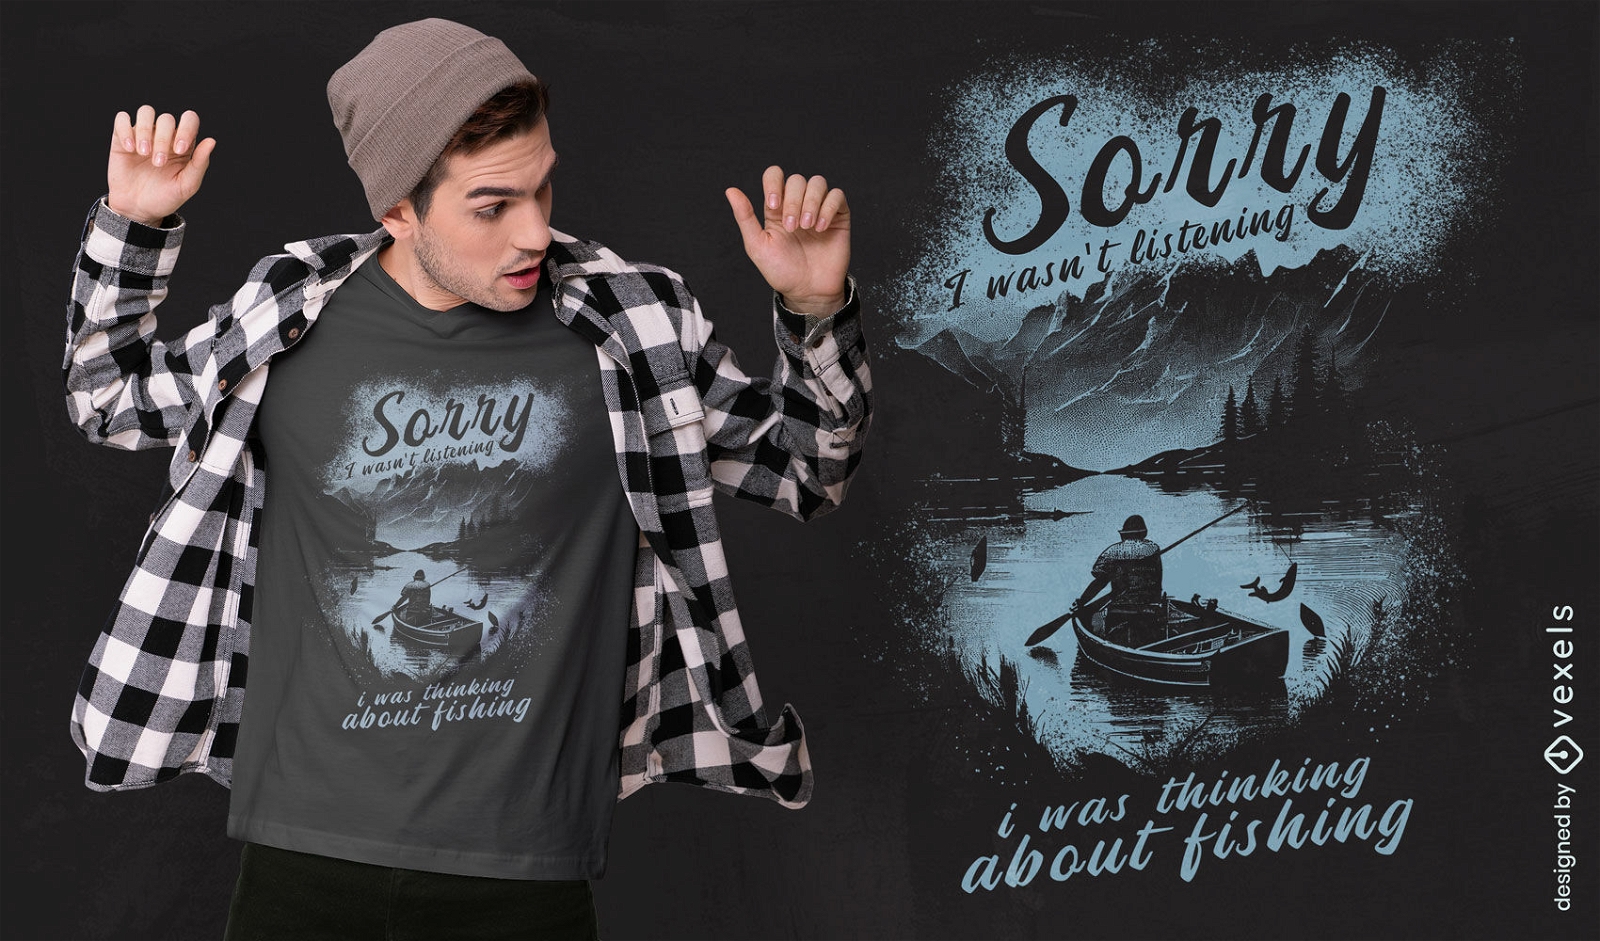 Dise?o de camiseta de soledad de pesca.